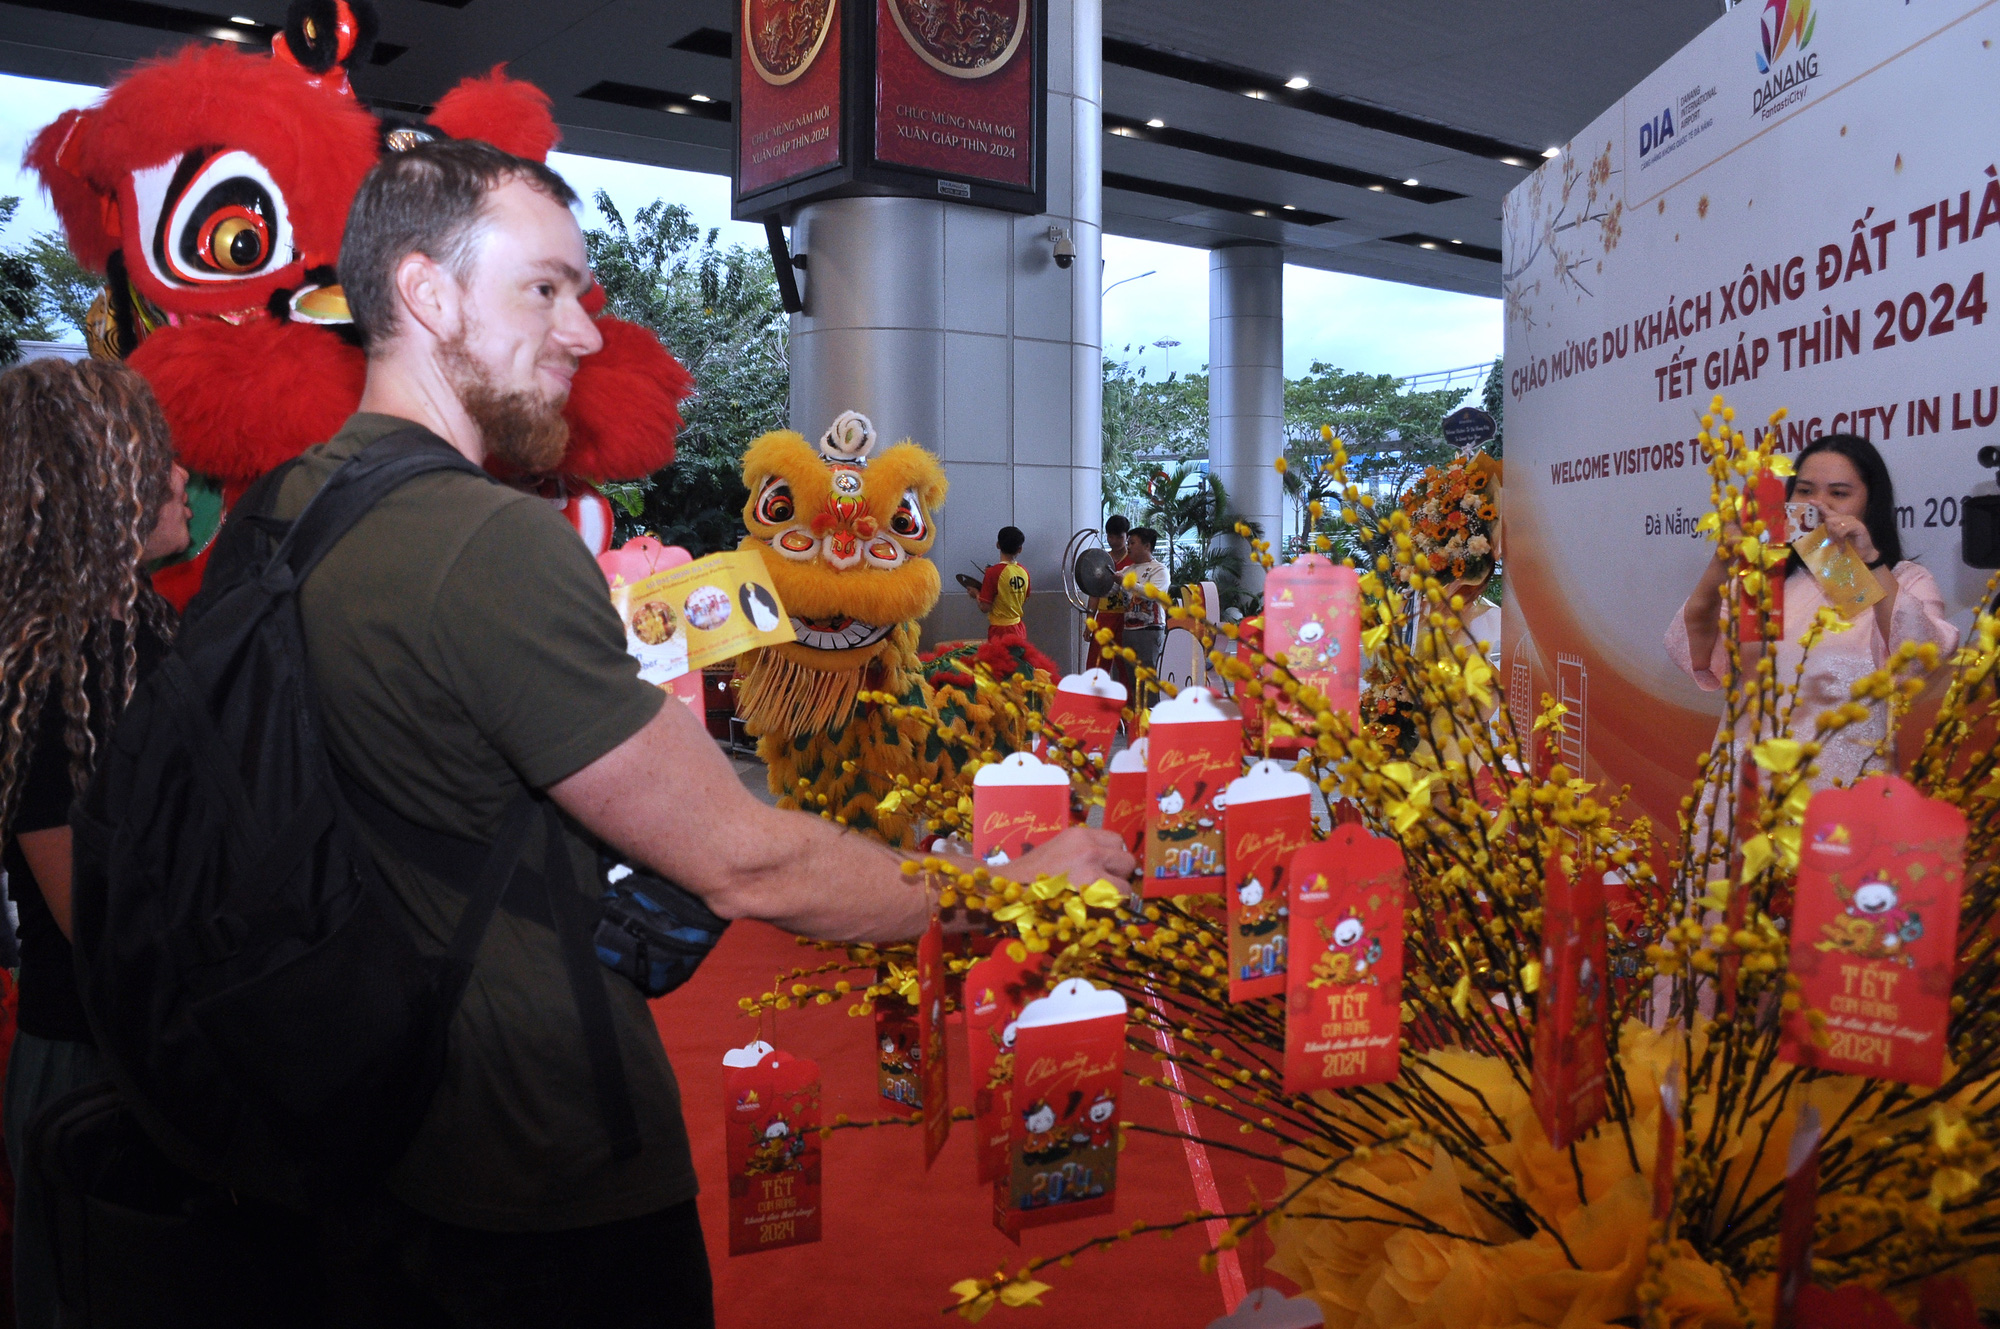 Du khách được chào đón tại sân bay Đà Nẵng khi đến thăm thành phố trong dịp Tết Nguyên đán - Ảnh: T.DINH